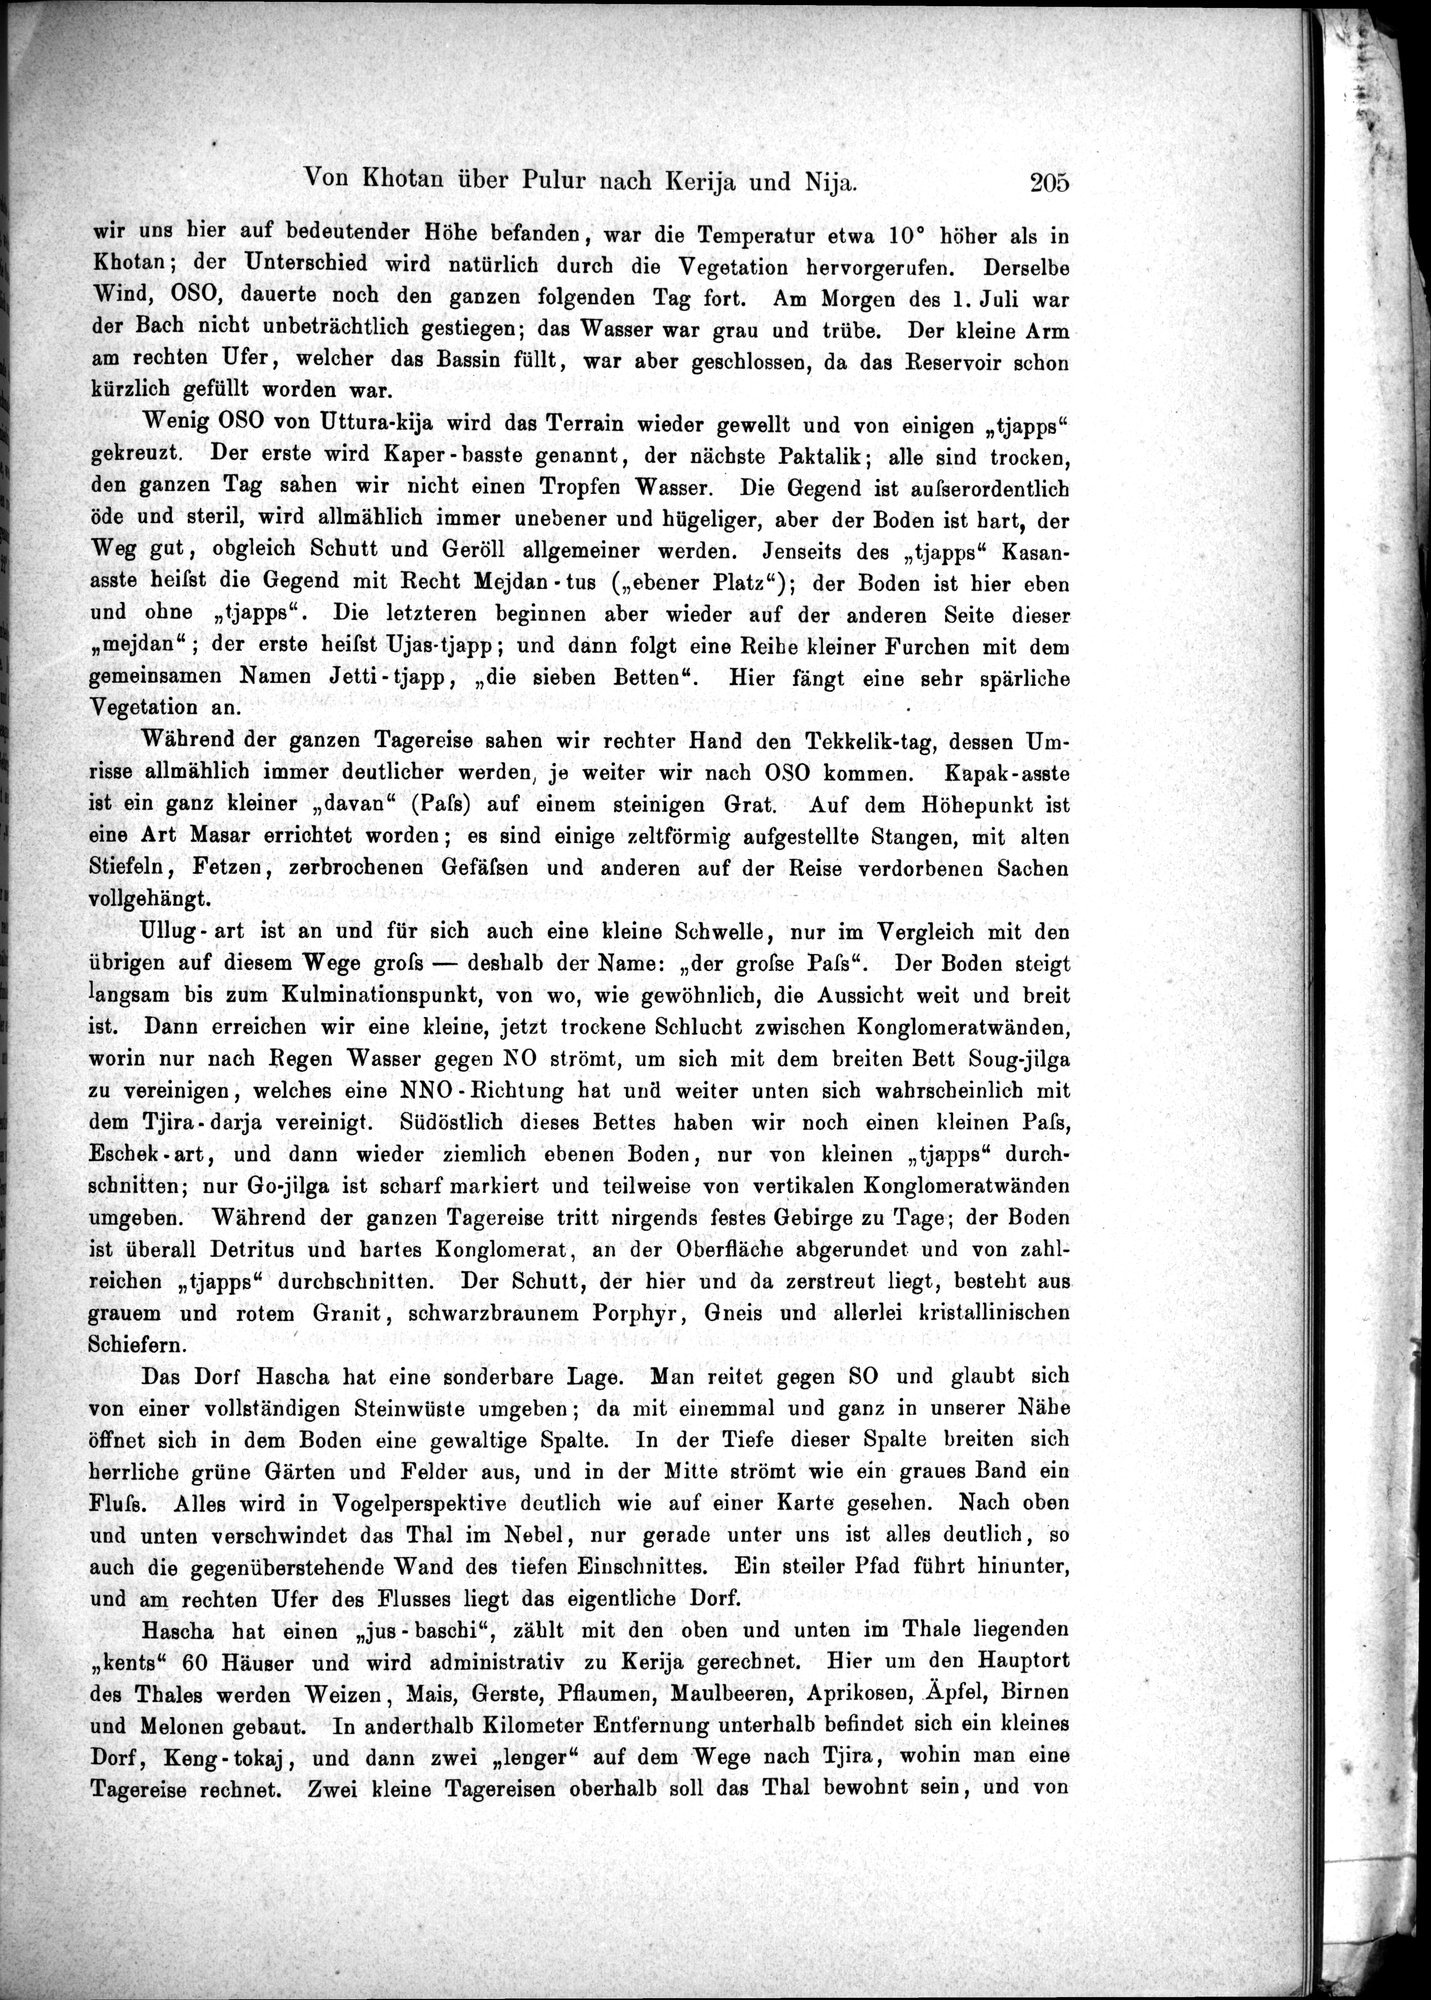 Die Geographische-Wissenschaftlichen Ergebnisse meiner Reisen in Zentralasien, 1894-1897 : vol.1 / Page 217 (Grayscale High Resolution Image)